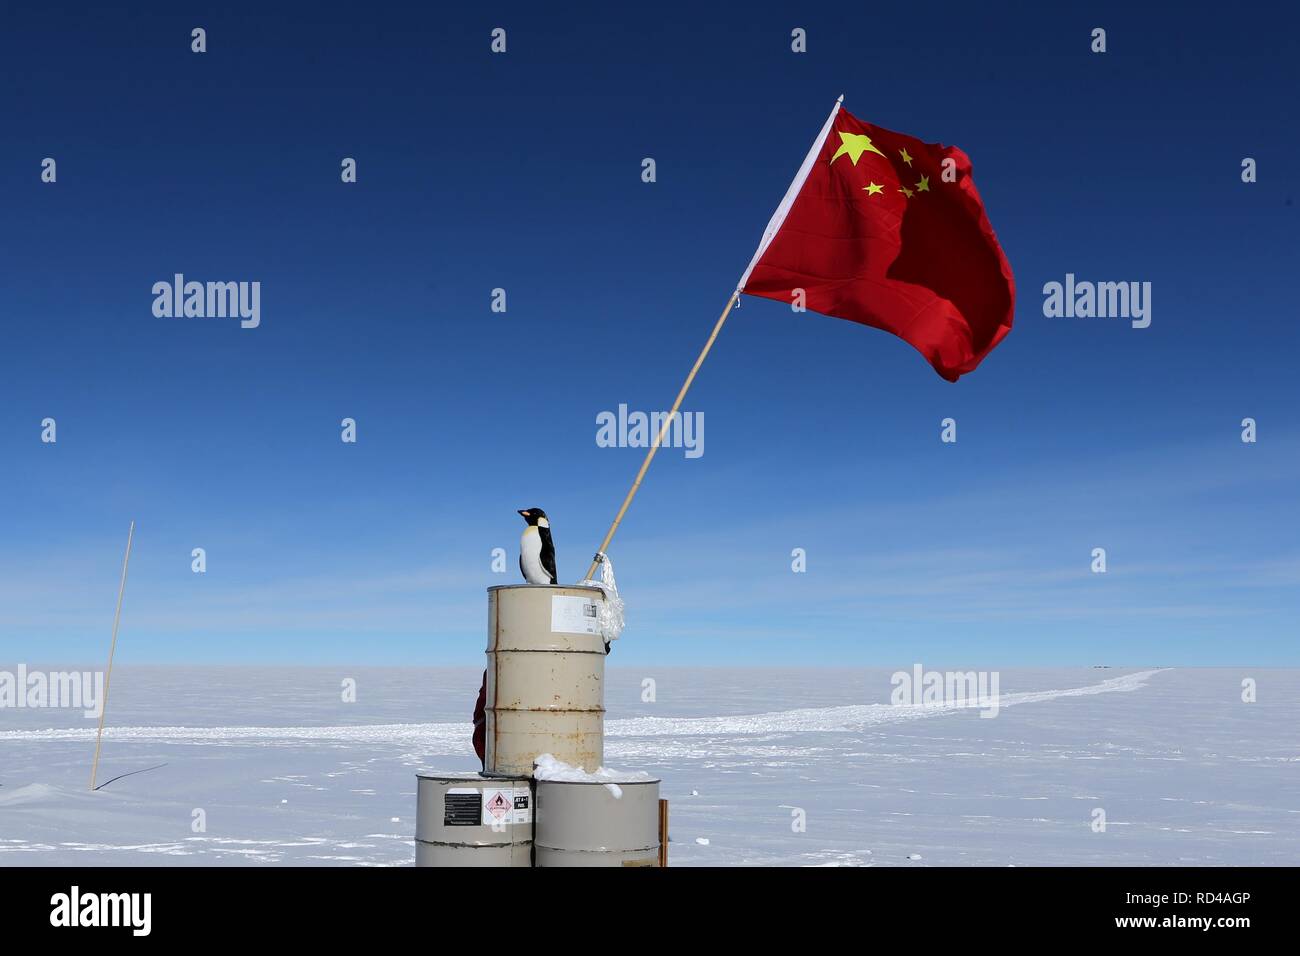 Antarktis, Antarktis. 16 Jan, 2019. Der chinesischen Nationalflagge ist im Bereich der Dome Argus (Dome A), die Spitze der Antarktis inland Eiskappe gesehen, in der Antarktis, Jan. 16, 2019. Credit: Liu Shiping/Xinhua/Alamy leben Nachrichten Stockfoto